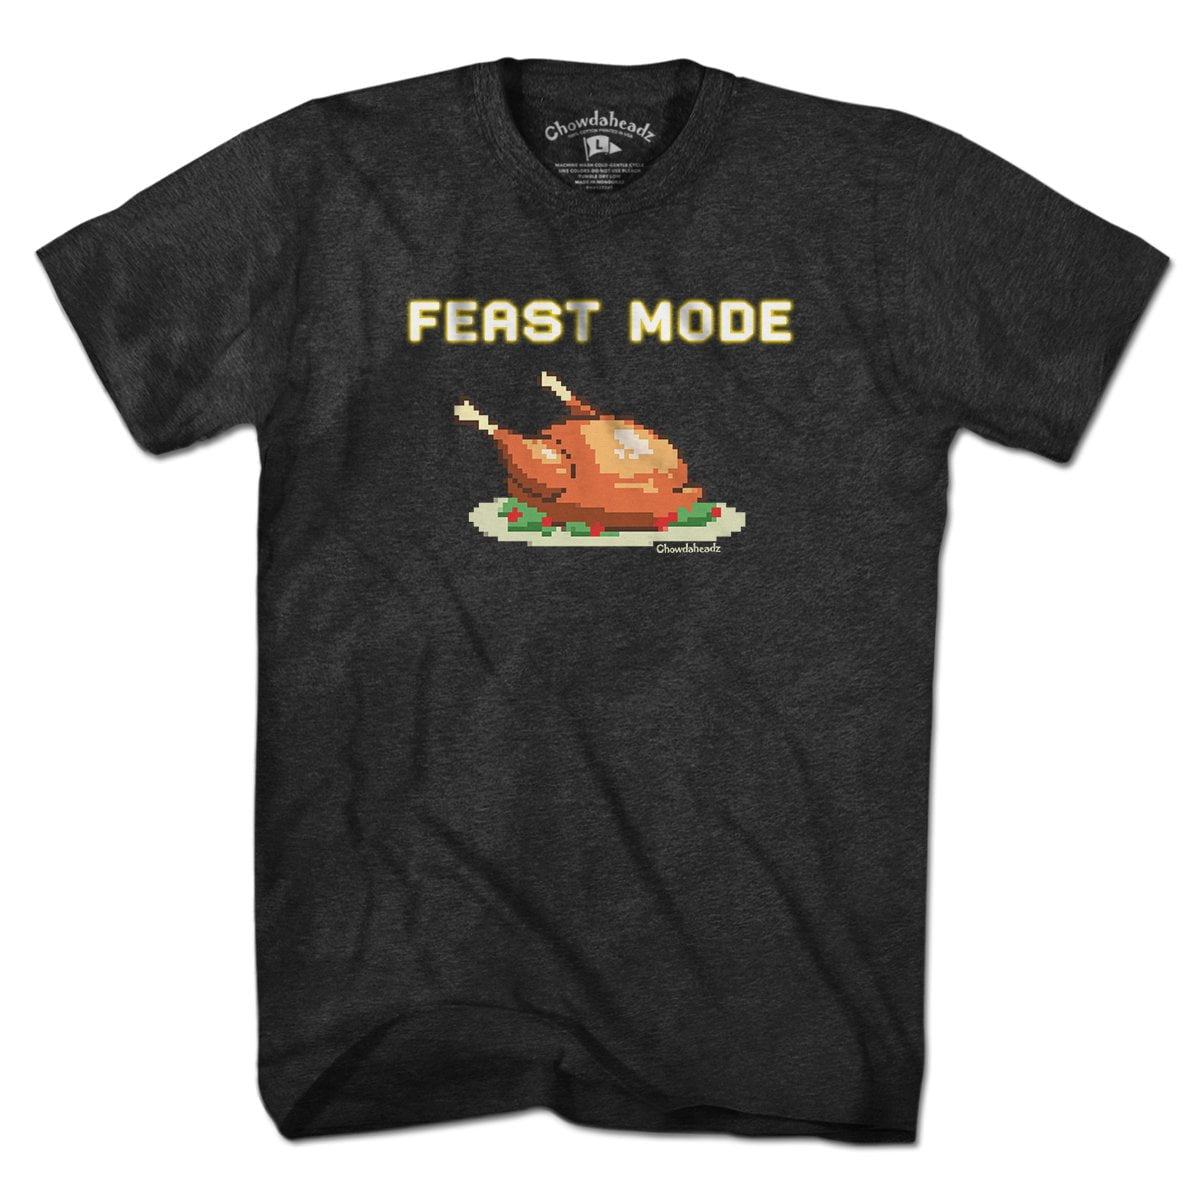 Feast Mode T-Shirt - Chowdaheadz